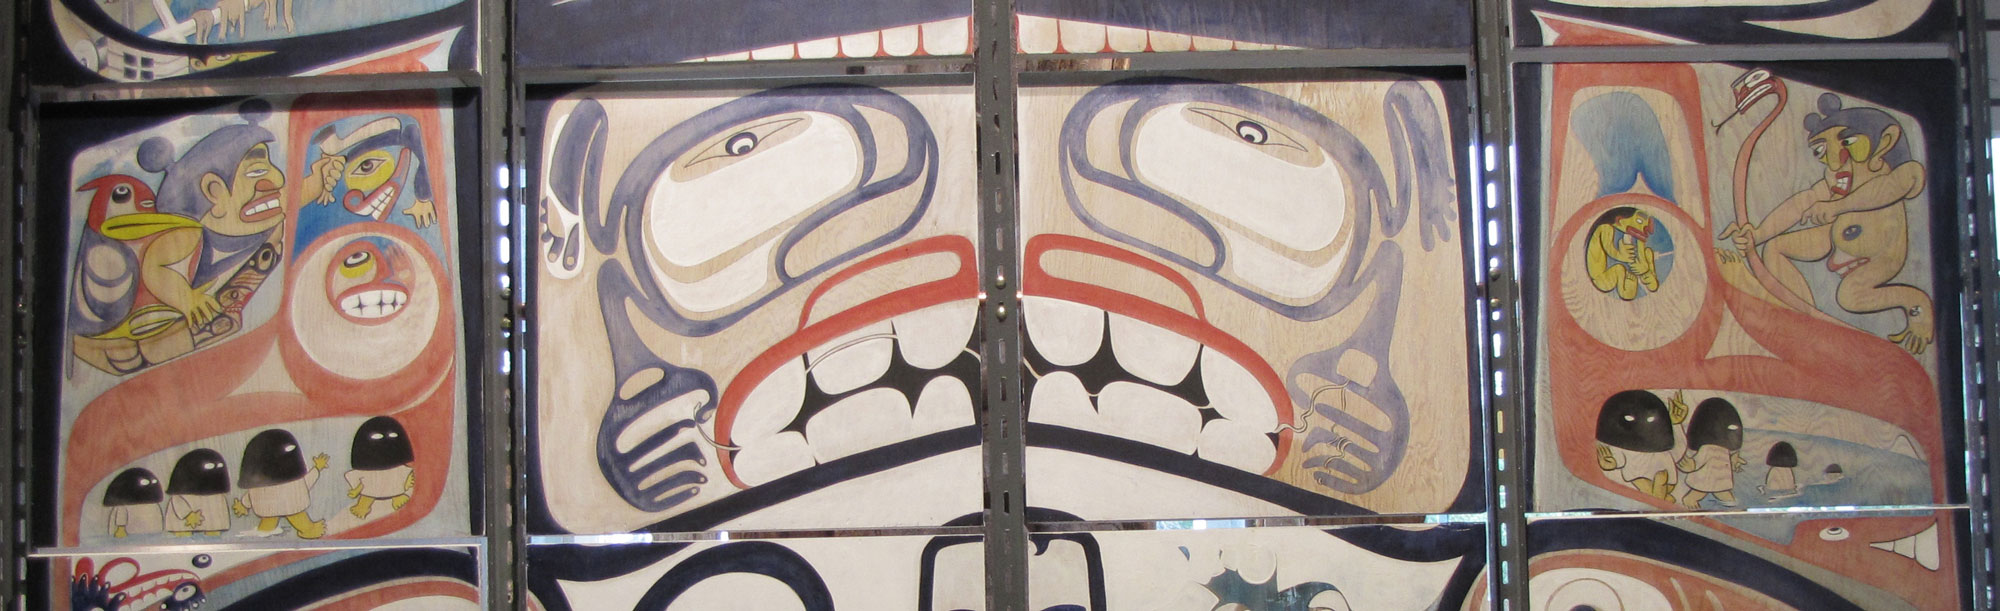 Native art at Nanaimo museum